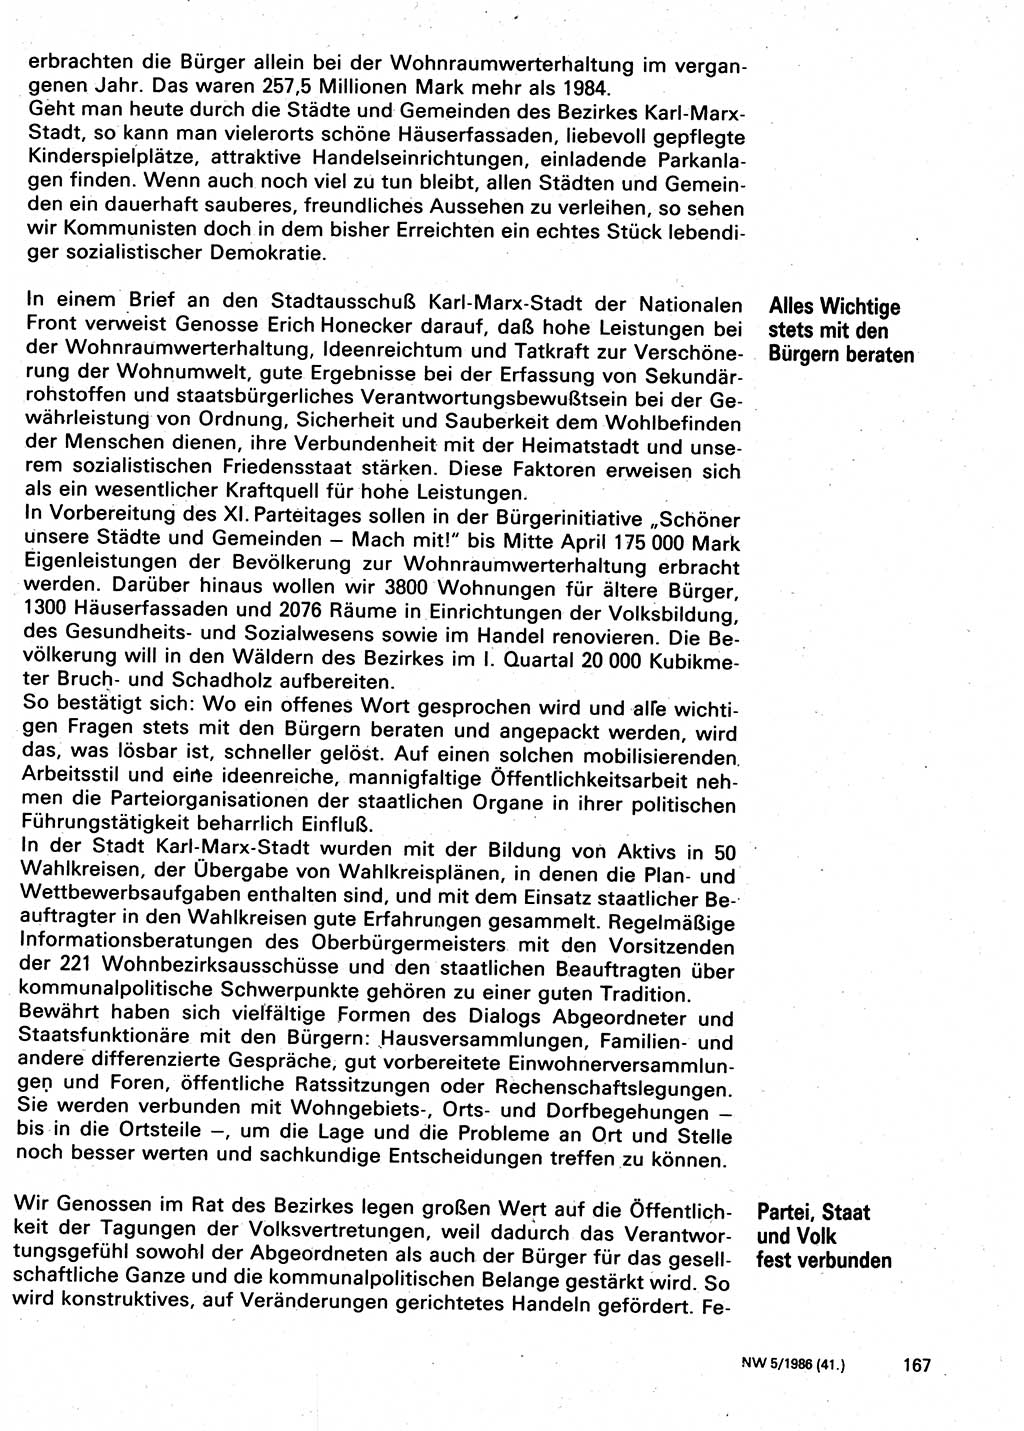 Neuer Weg (NW), Organ des Zentralkomitees (ZK) der SED (Sozialistische Einheitspartei Deutschlands) für Fragen des Parteilebens, 41. Jahrgang [Deutsche Demokratische Republik (DDR)] 1986, Seite 167 (NW ZK SED DDR 1986, S. 167)